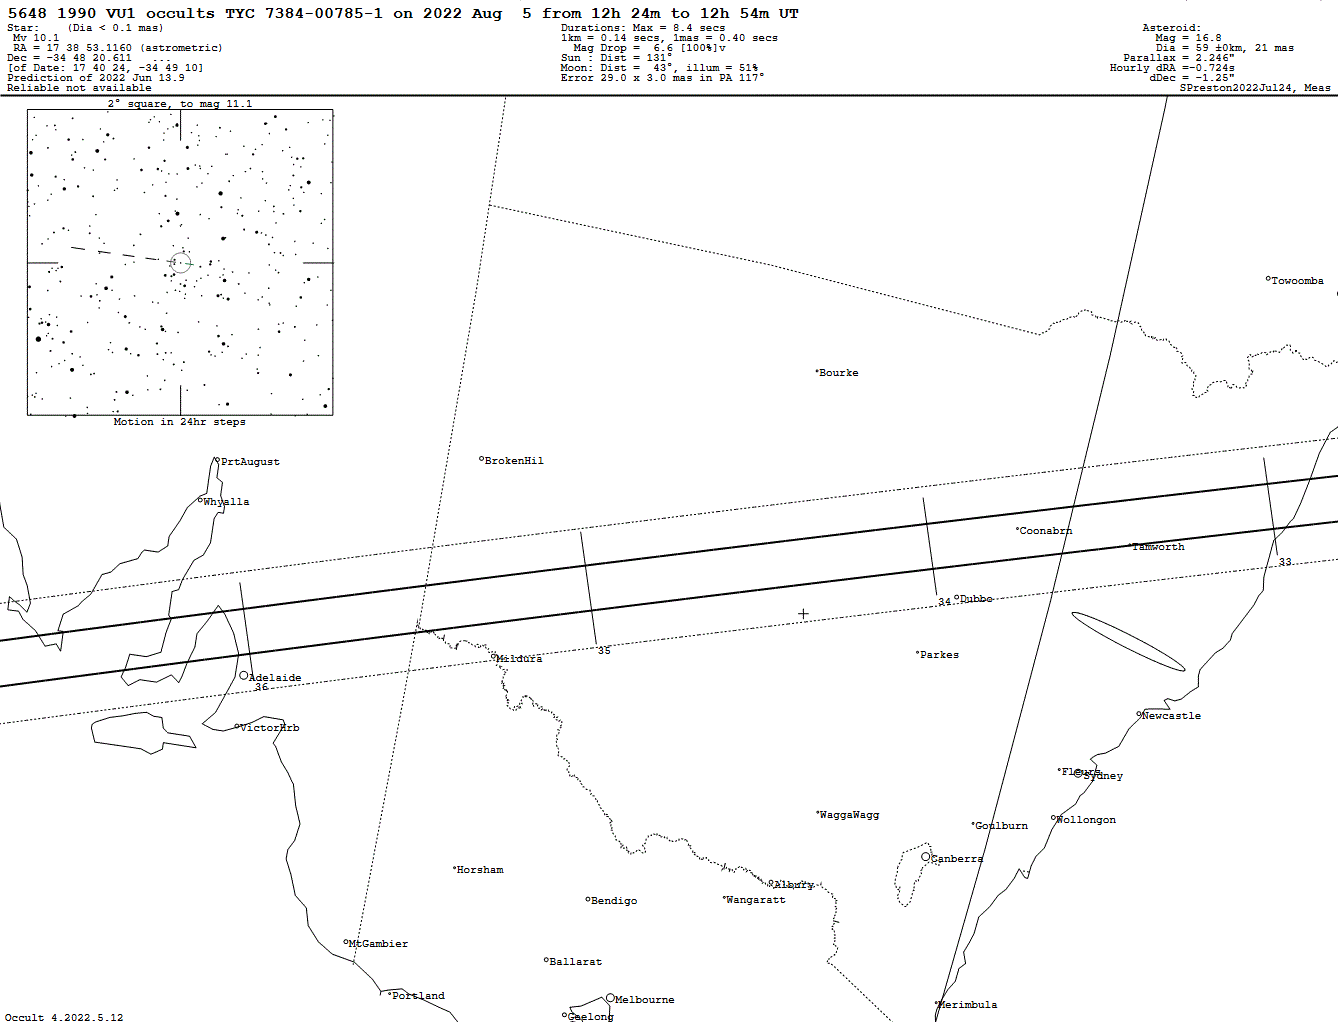 1990 VU1 Update Map